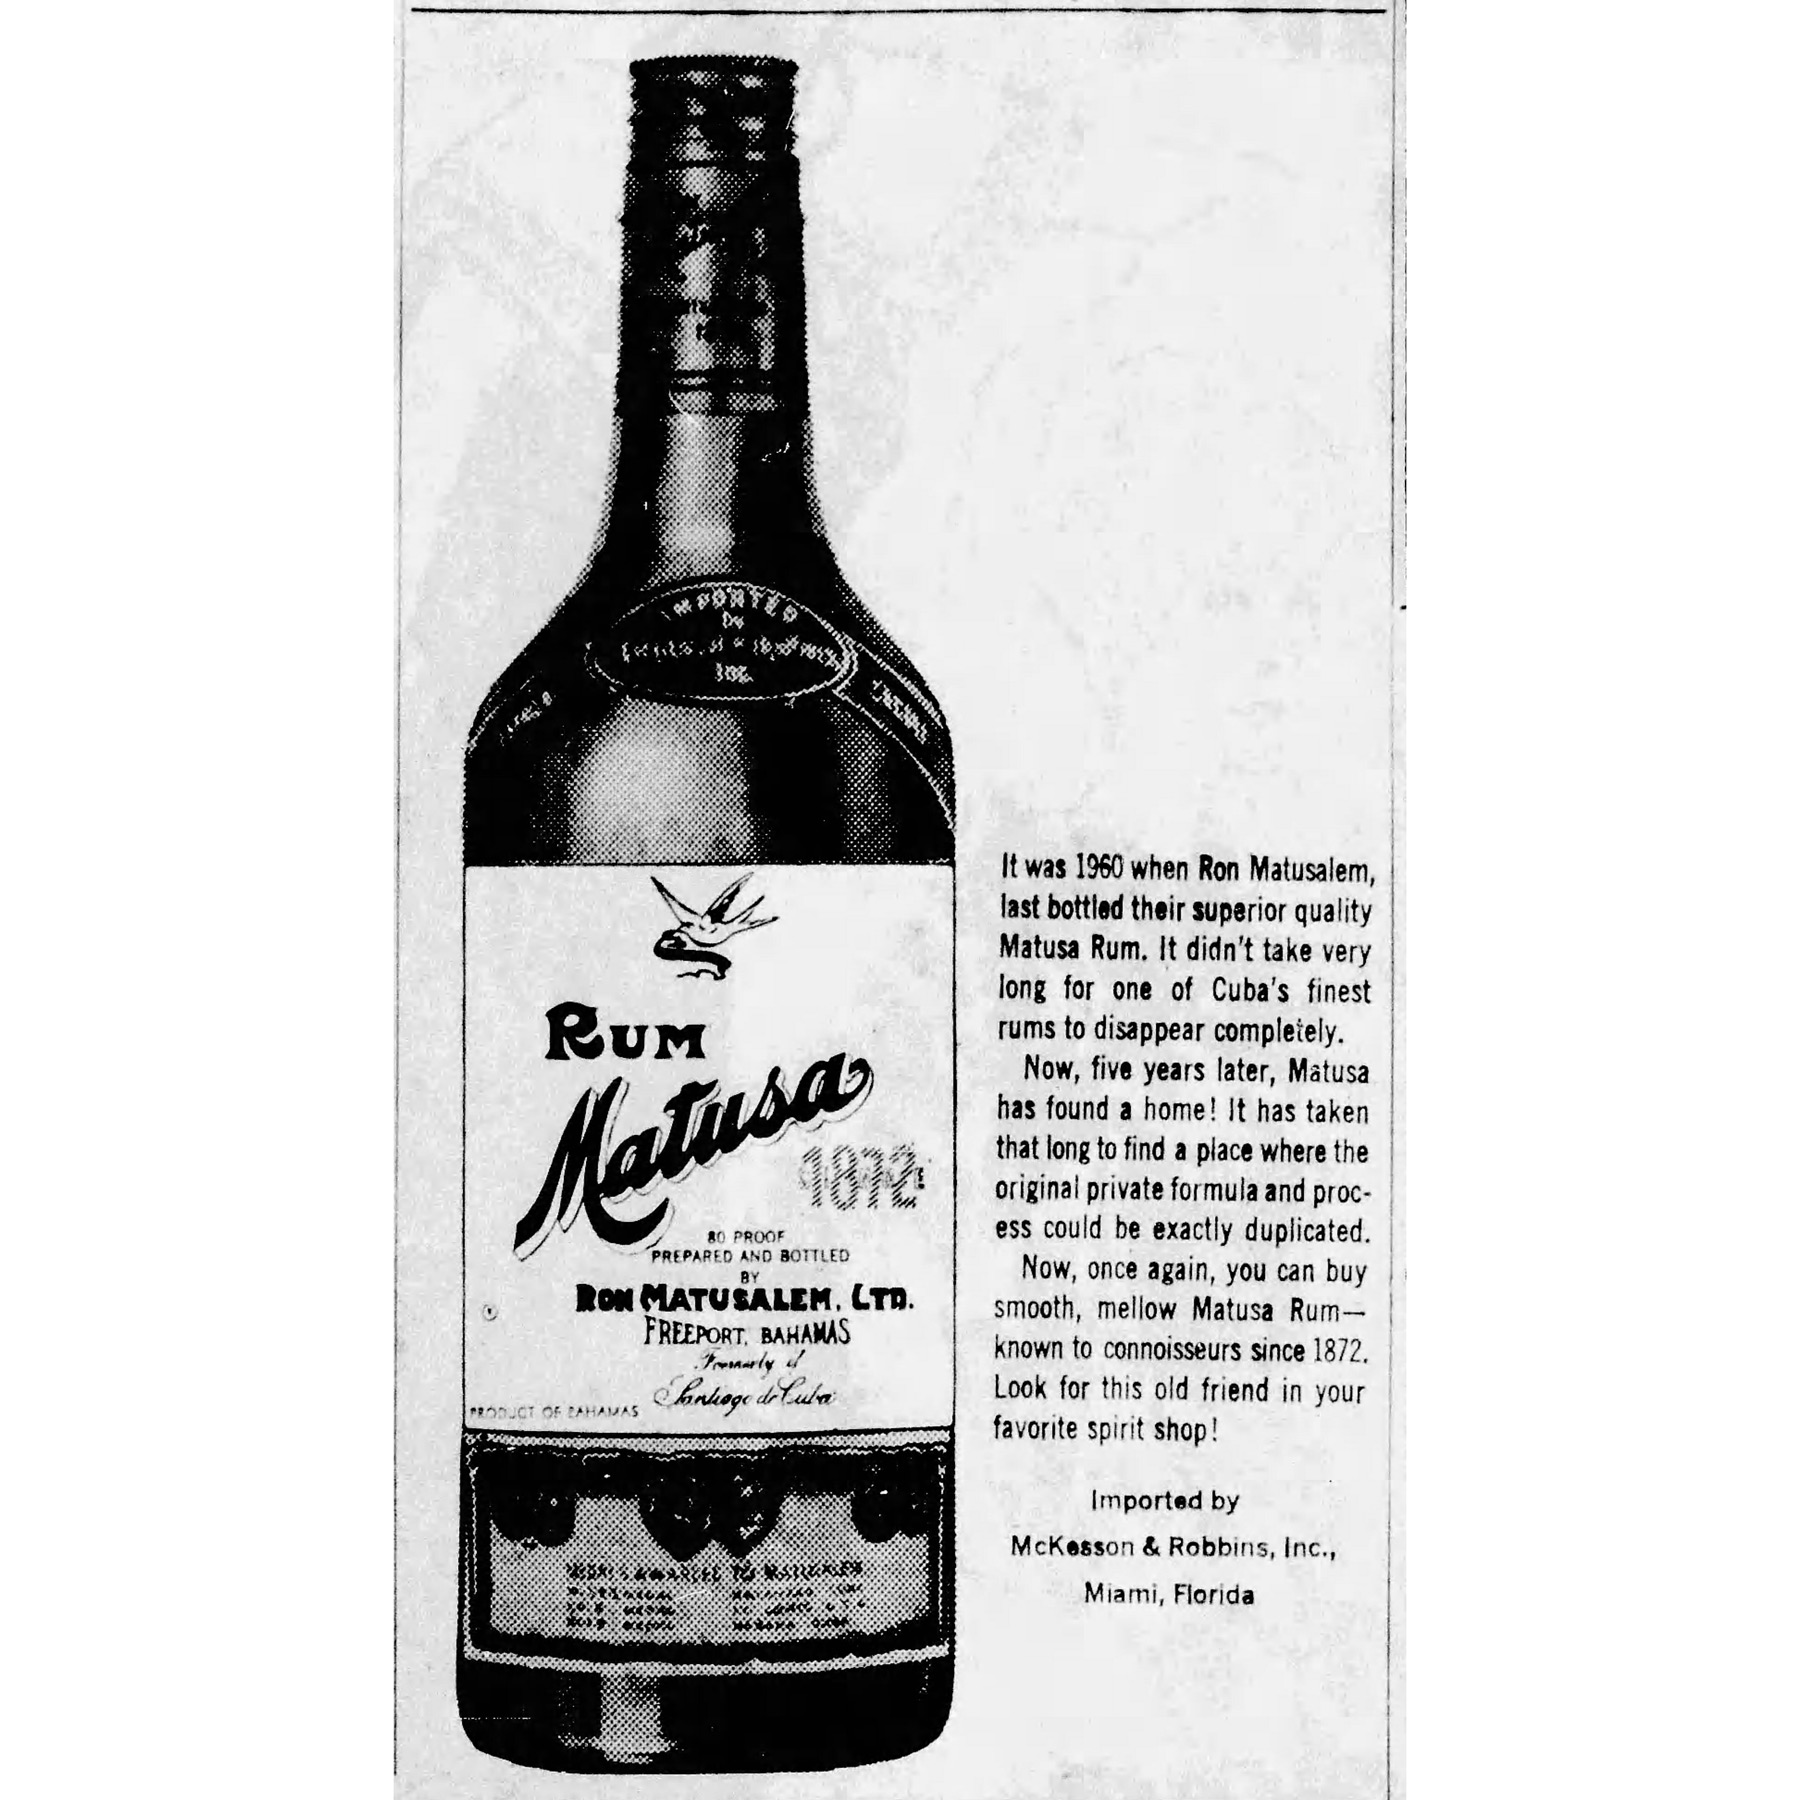 mh1950_1965.-Rum-Matusa.-Miami-Herald-2